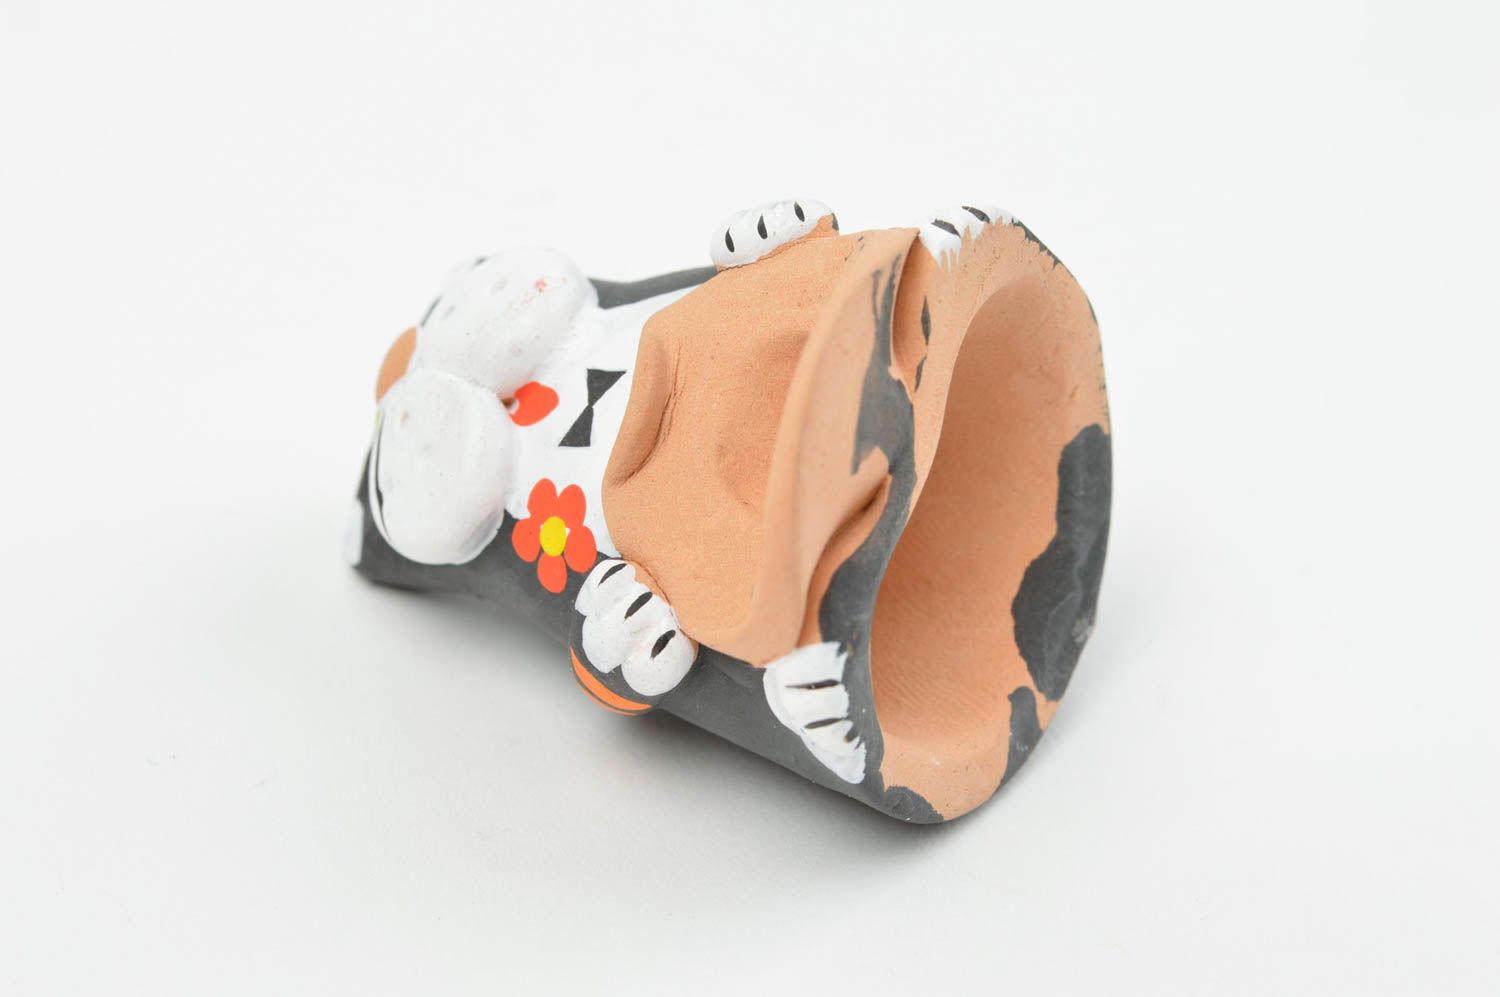 Lustige handgemachte grelle künstlerische Statuette aus Ton Katze mit Hut bemalt foto 4